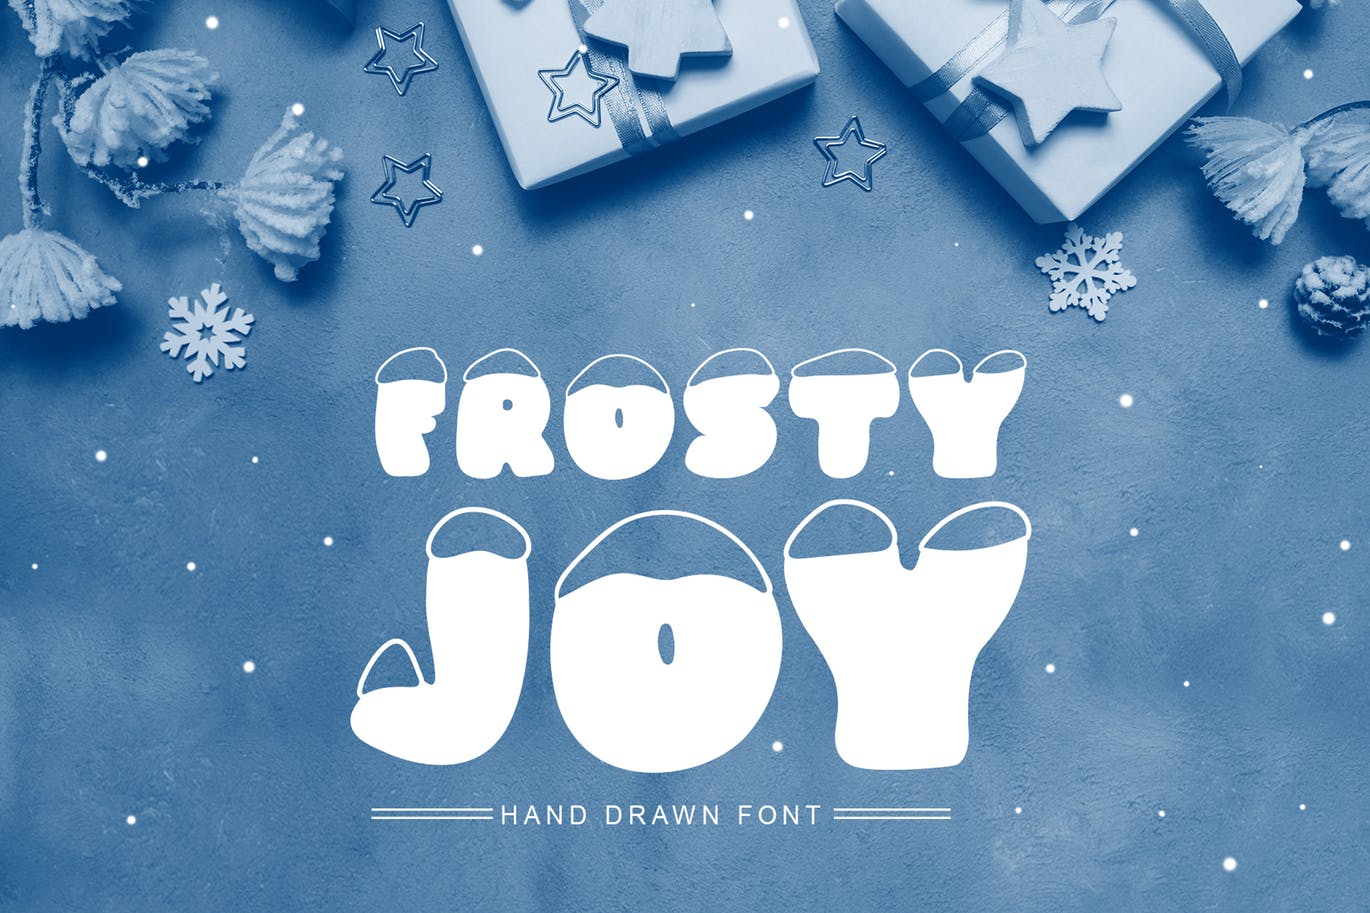 斯堪的纳维亚风格可爱积雪字体素材库精选 Frosty Joy Hand Drawn Display Font插图